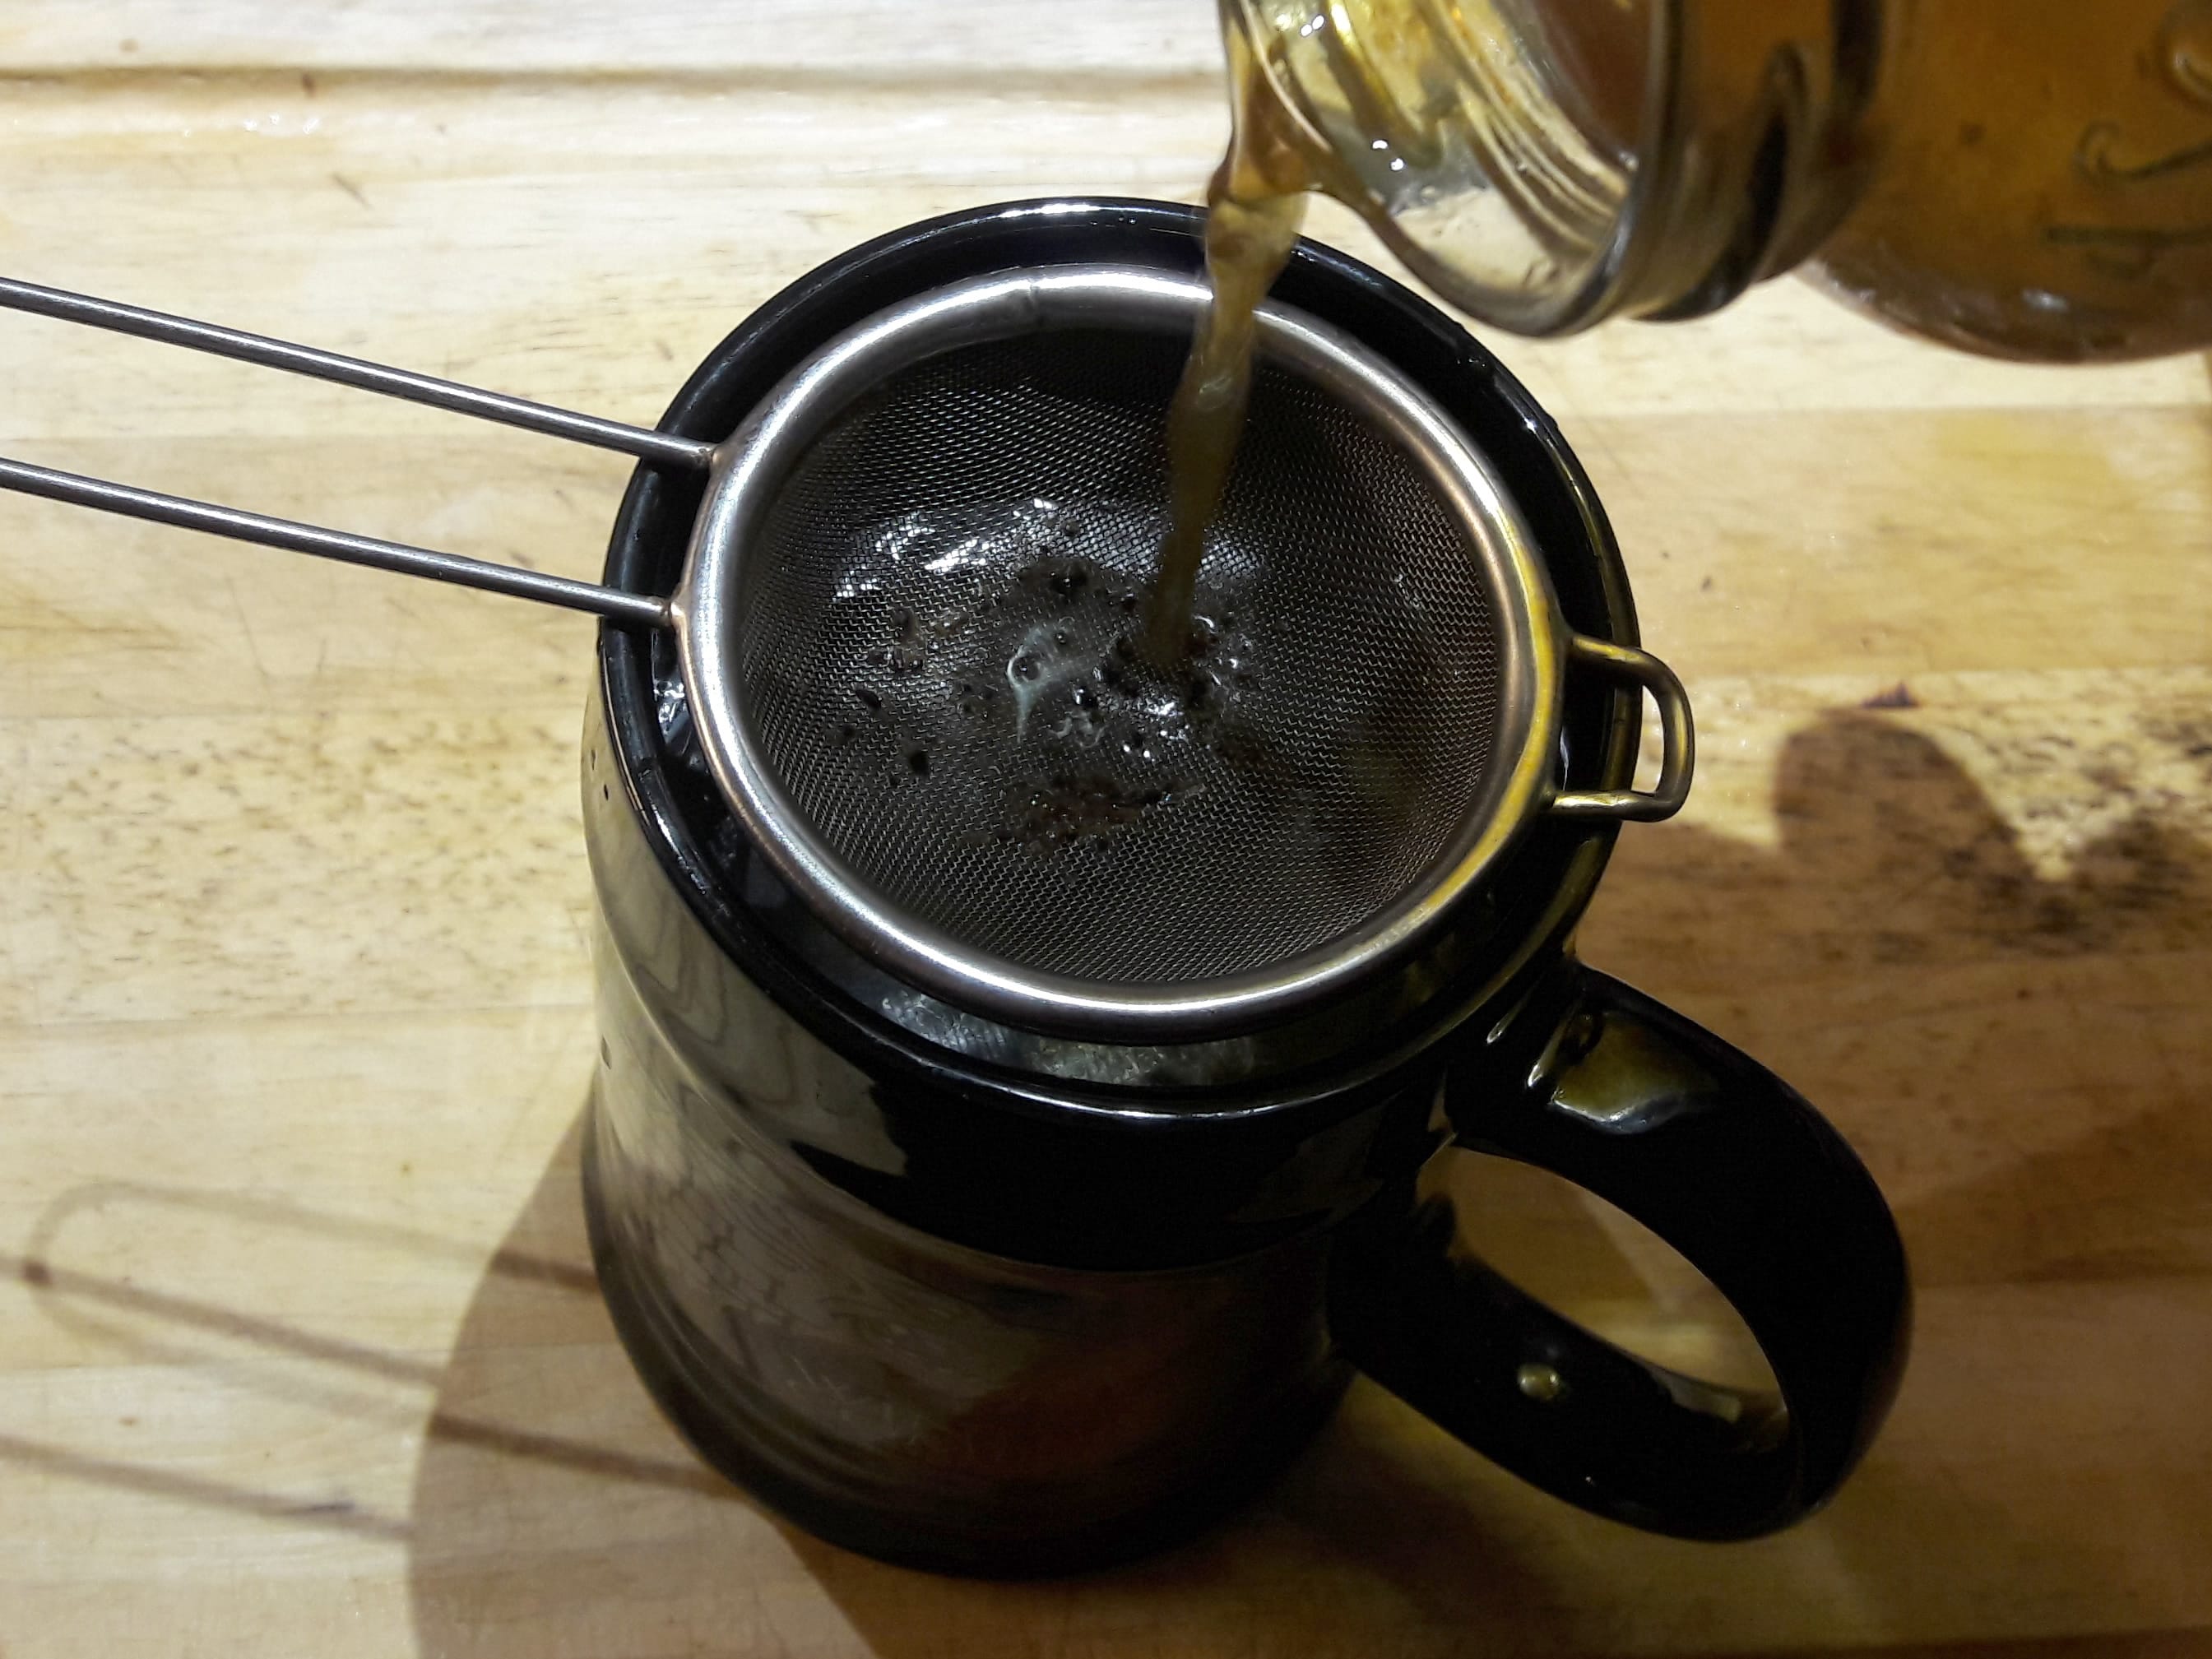 Coffee in a Mason Jar » My Plasticfree Life